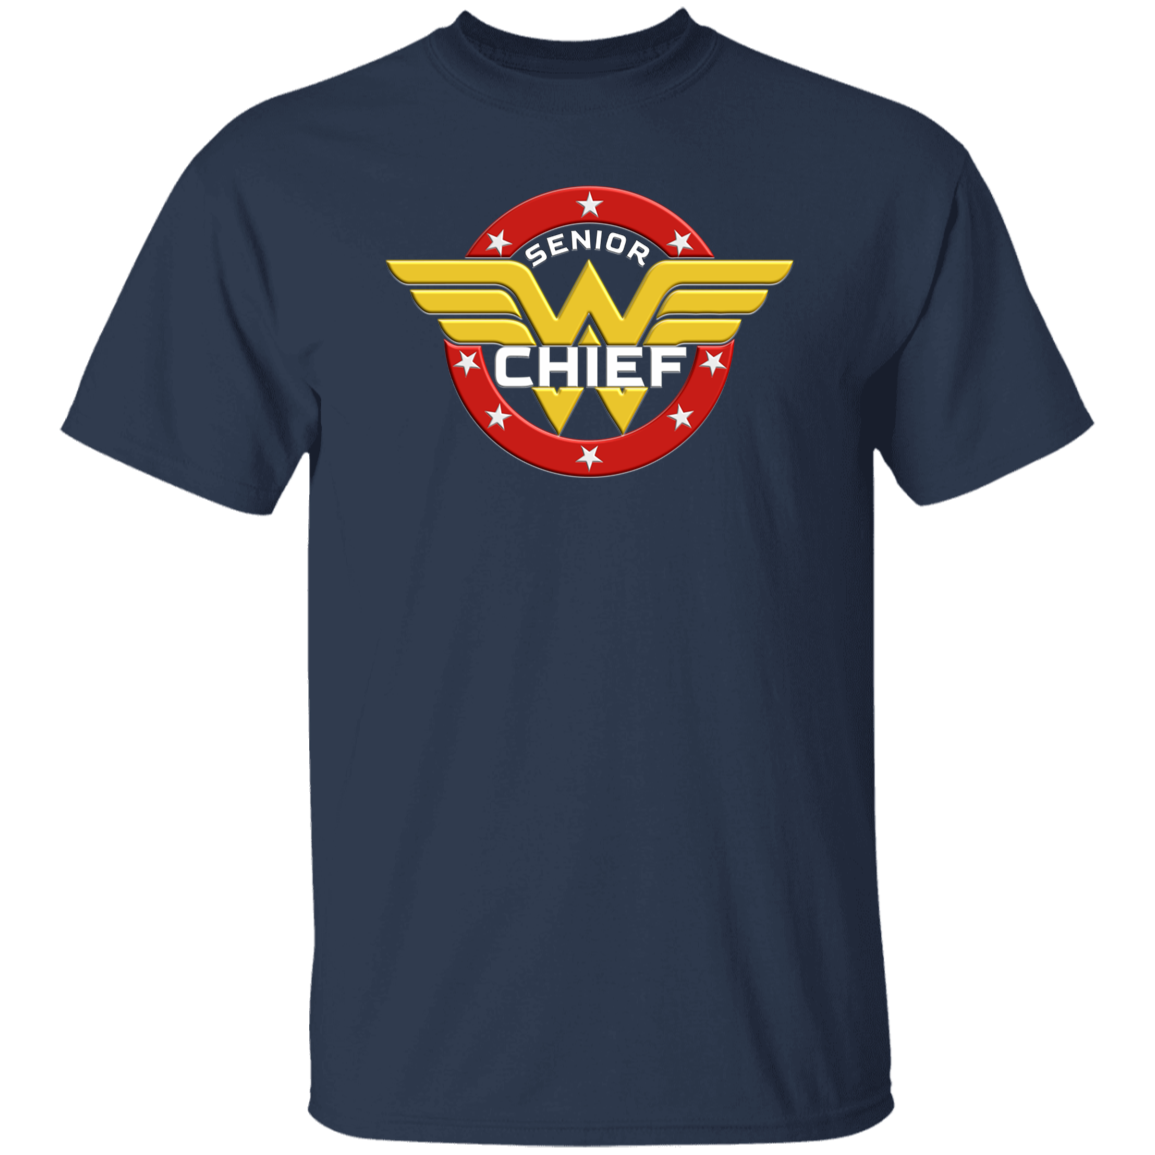 WW Senior Chief 5.3 oz. T-Shirt